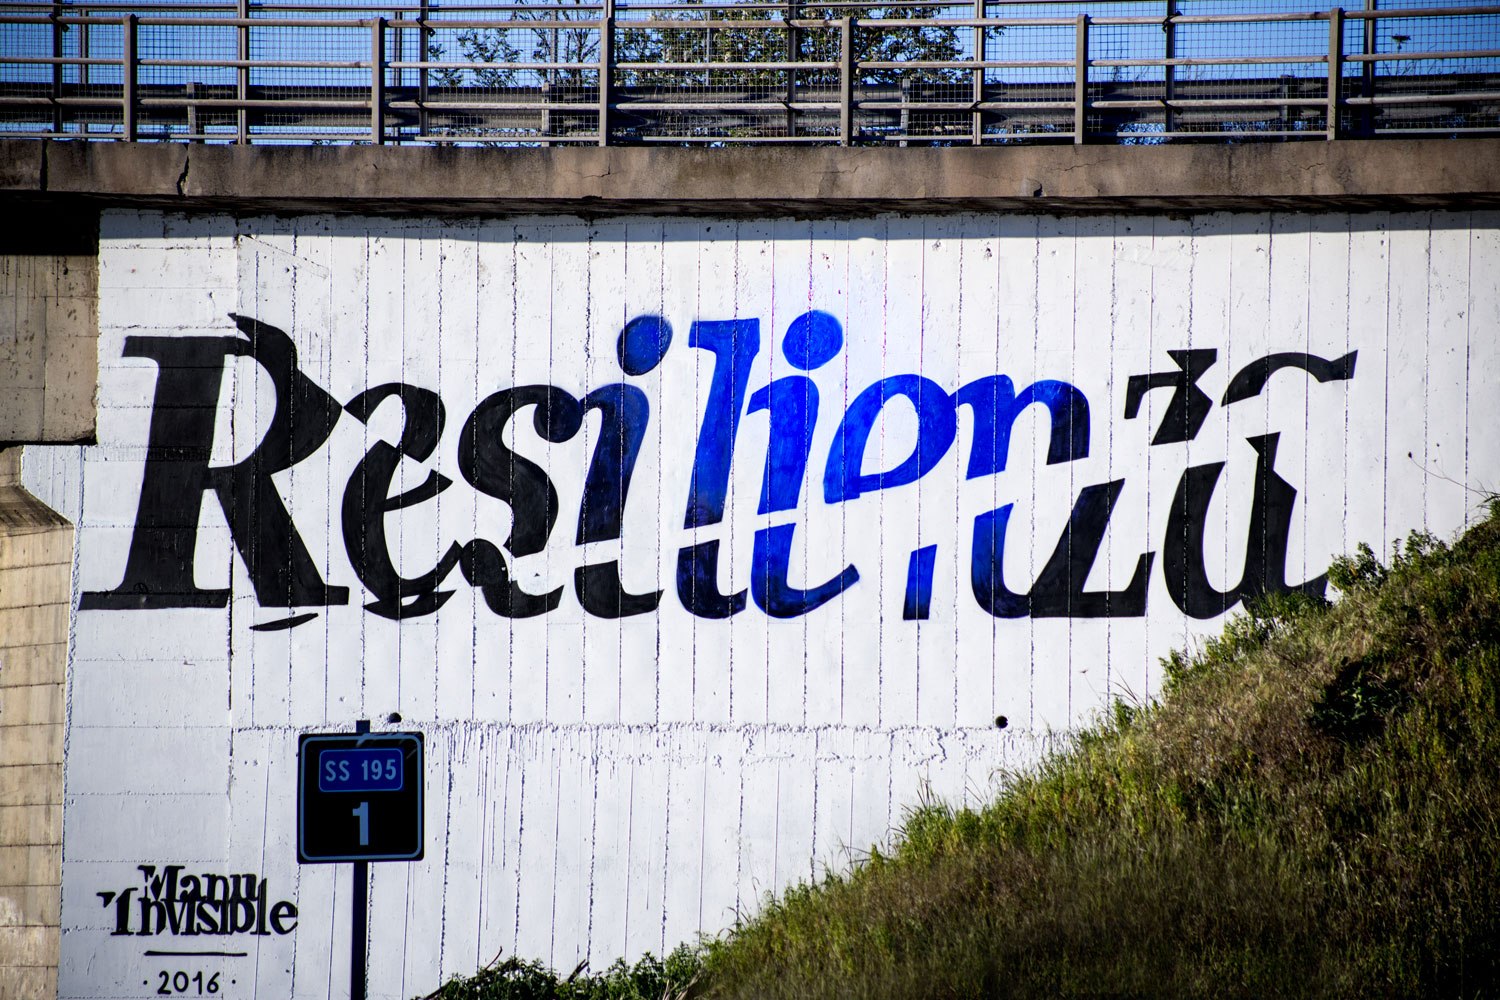 ''Resilienza'' Spray et peinture at quartz sur le mur 8 x 4,5 m – Cagliari ss. 195 - 2016